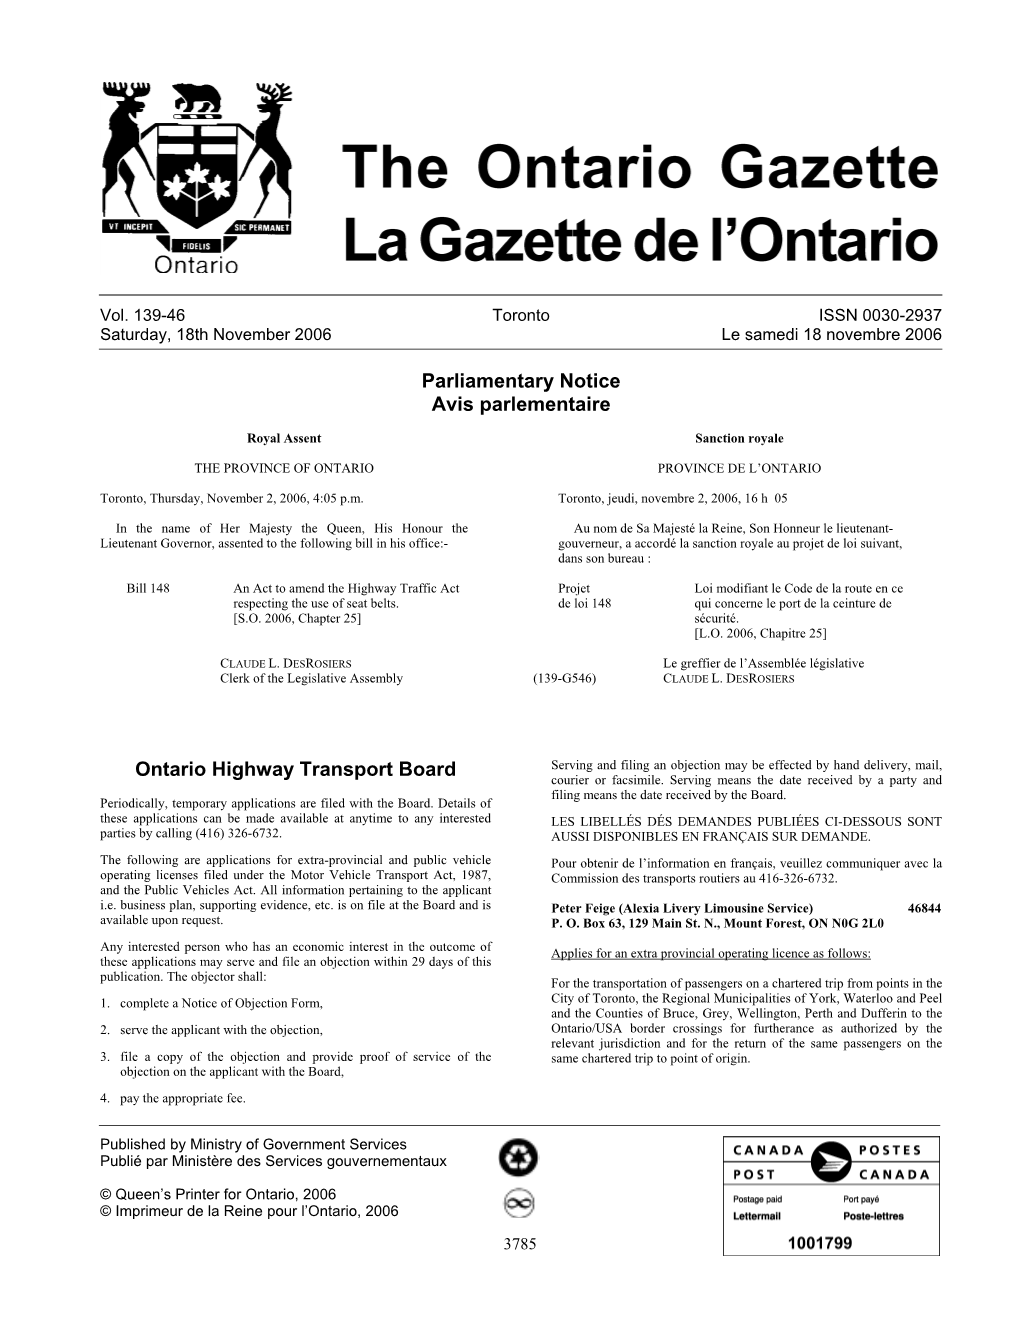 Ontario Gazette Volume 139 Issue 46, La Gazette De L'ontario Volume 139